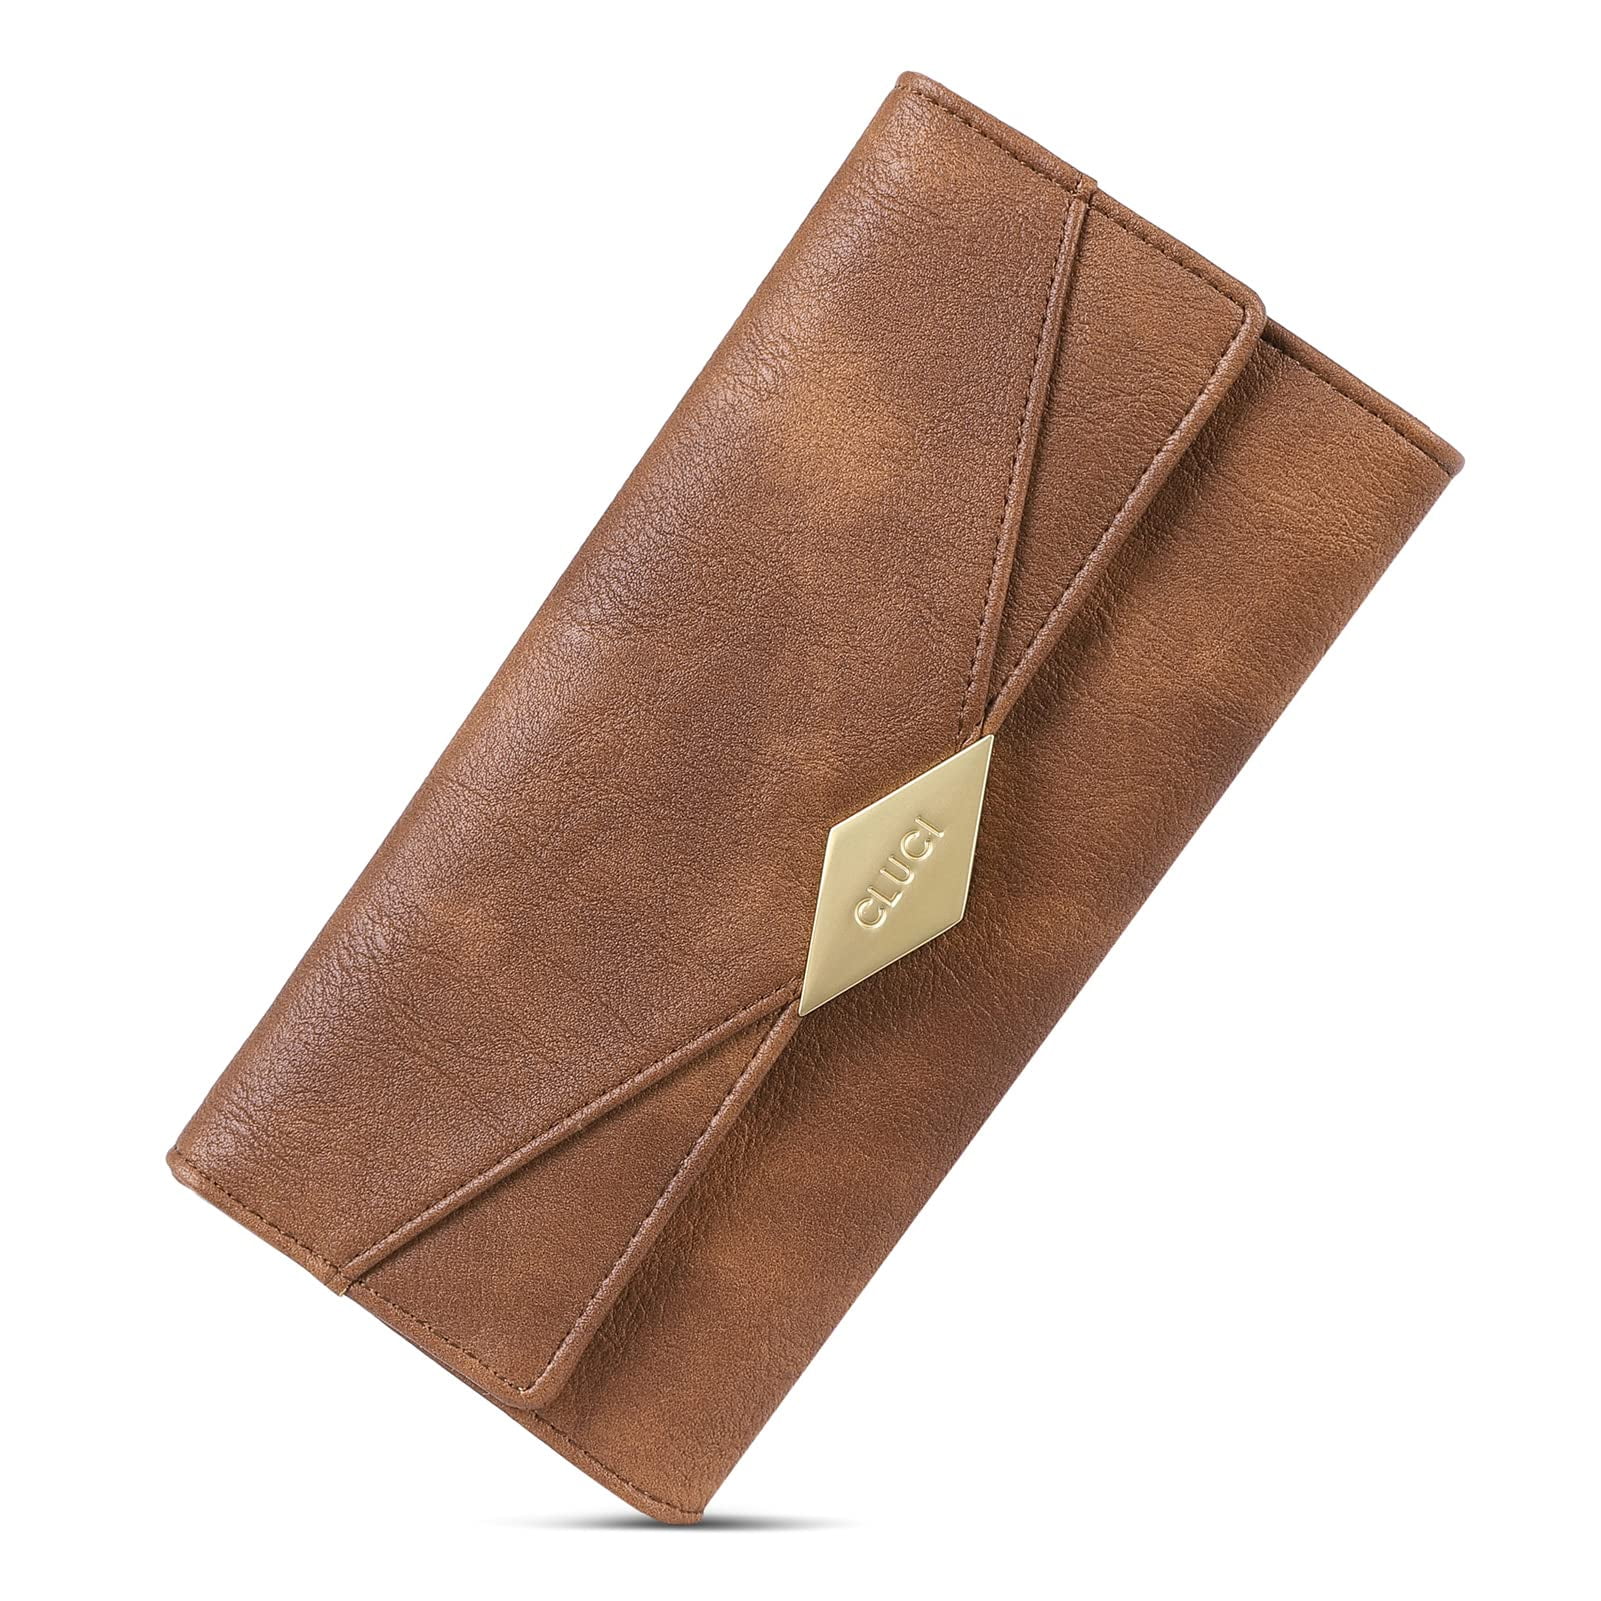  CLUCI Women Wallet Large Leather Designer Card Holder